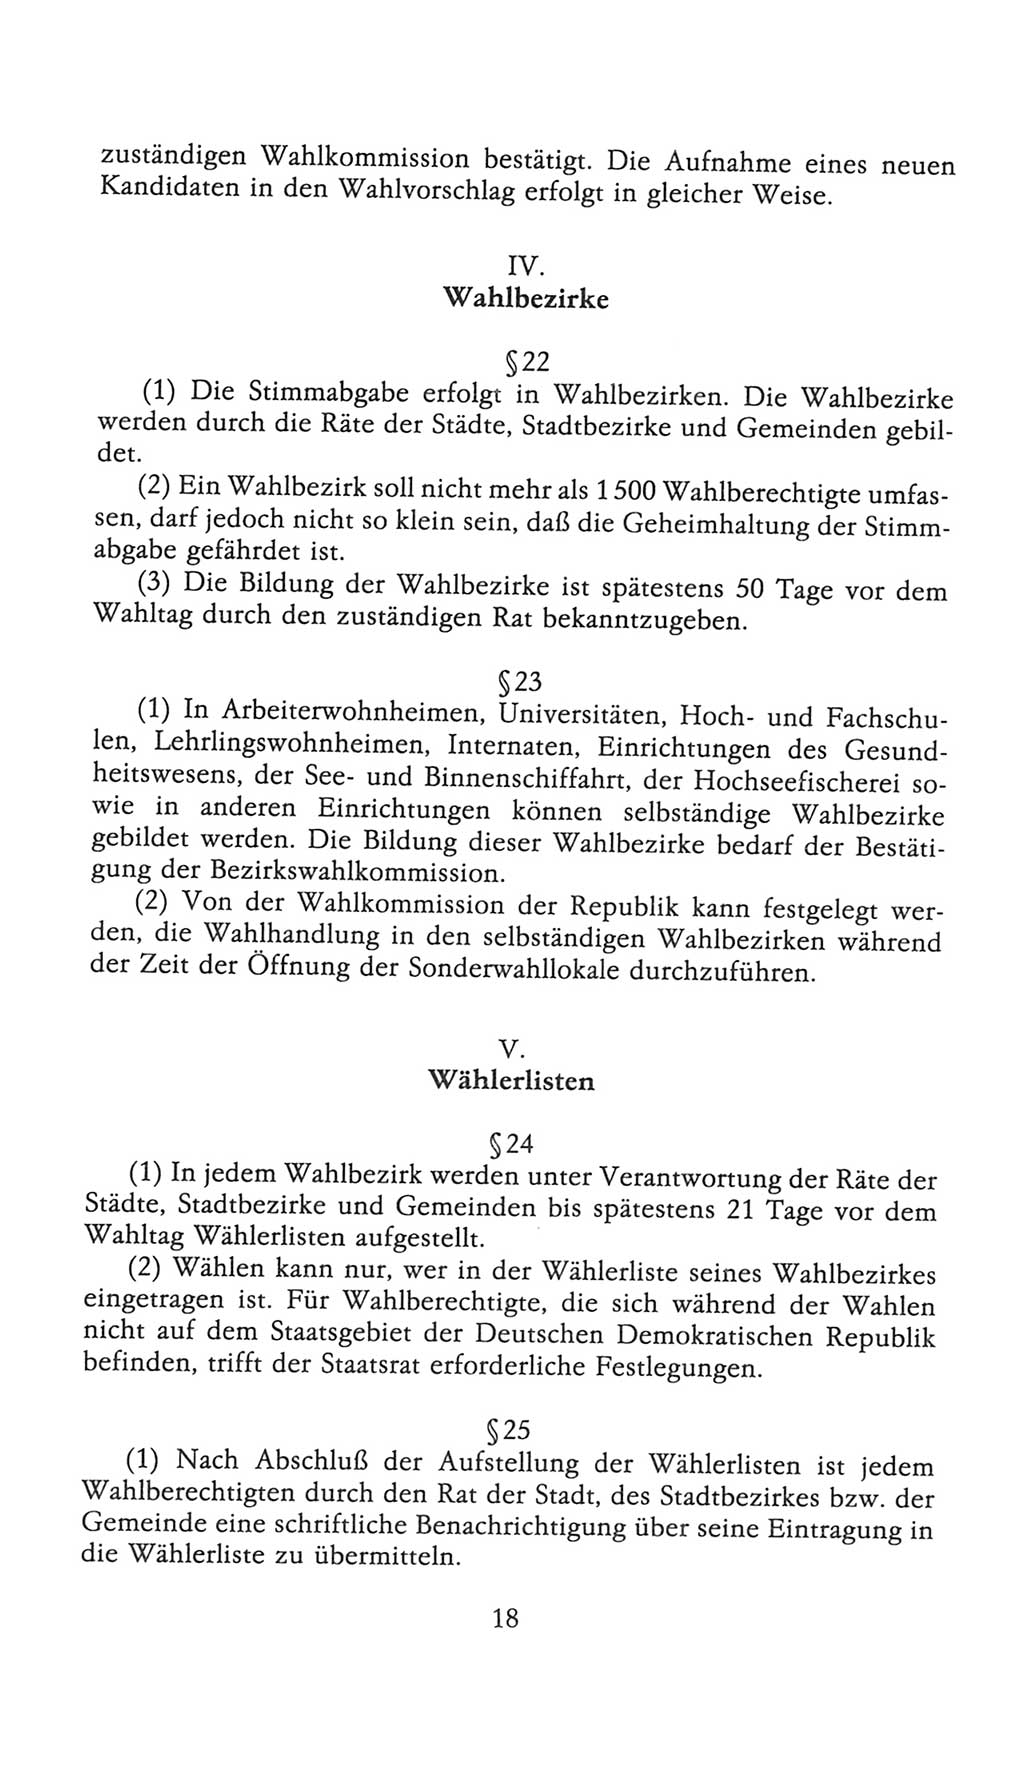 Volkskammer (VK) der Deutschen Demokratischen Republik (DDR), 9. Wahlperiode 1986-1990, Seite 18 (VK. DDR 9. WP. 1986-1990, S. 18)